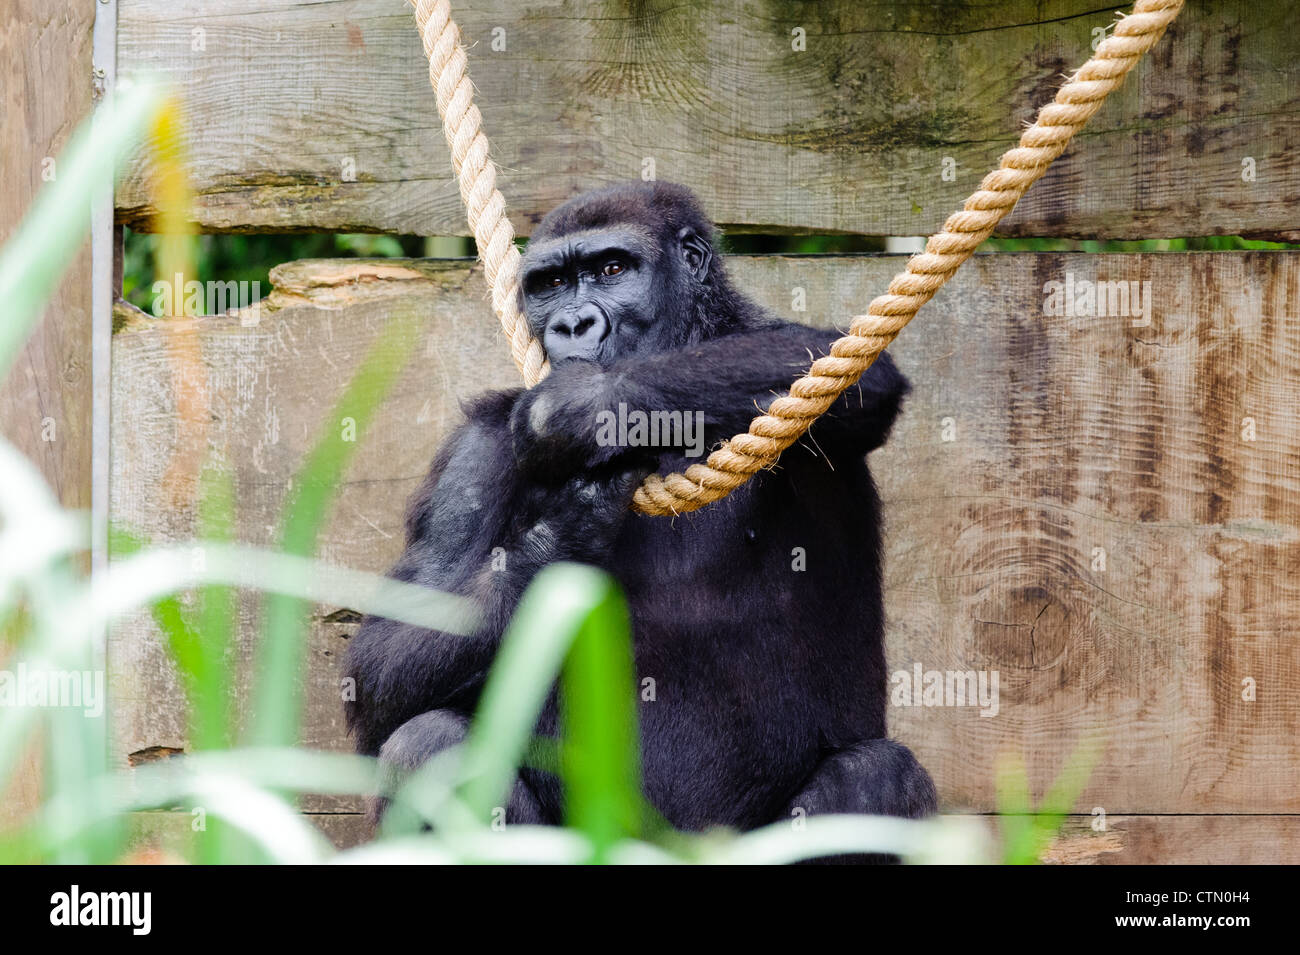 Un gorille de plaine de l'Ouest suçant son pouce. Prise au zoo de Bristol. Banque D'Images